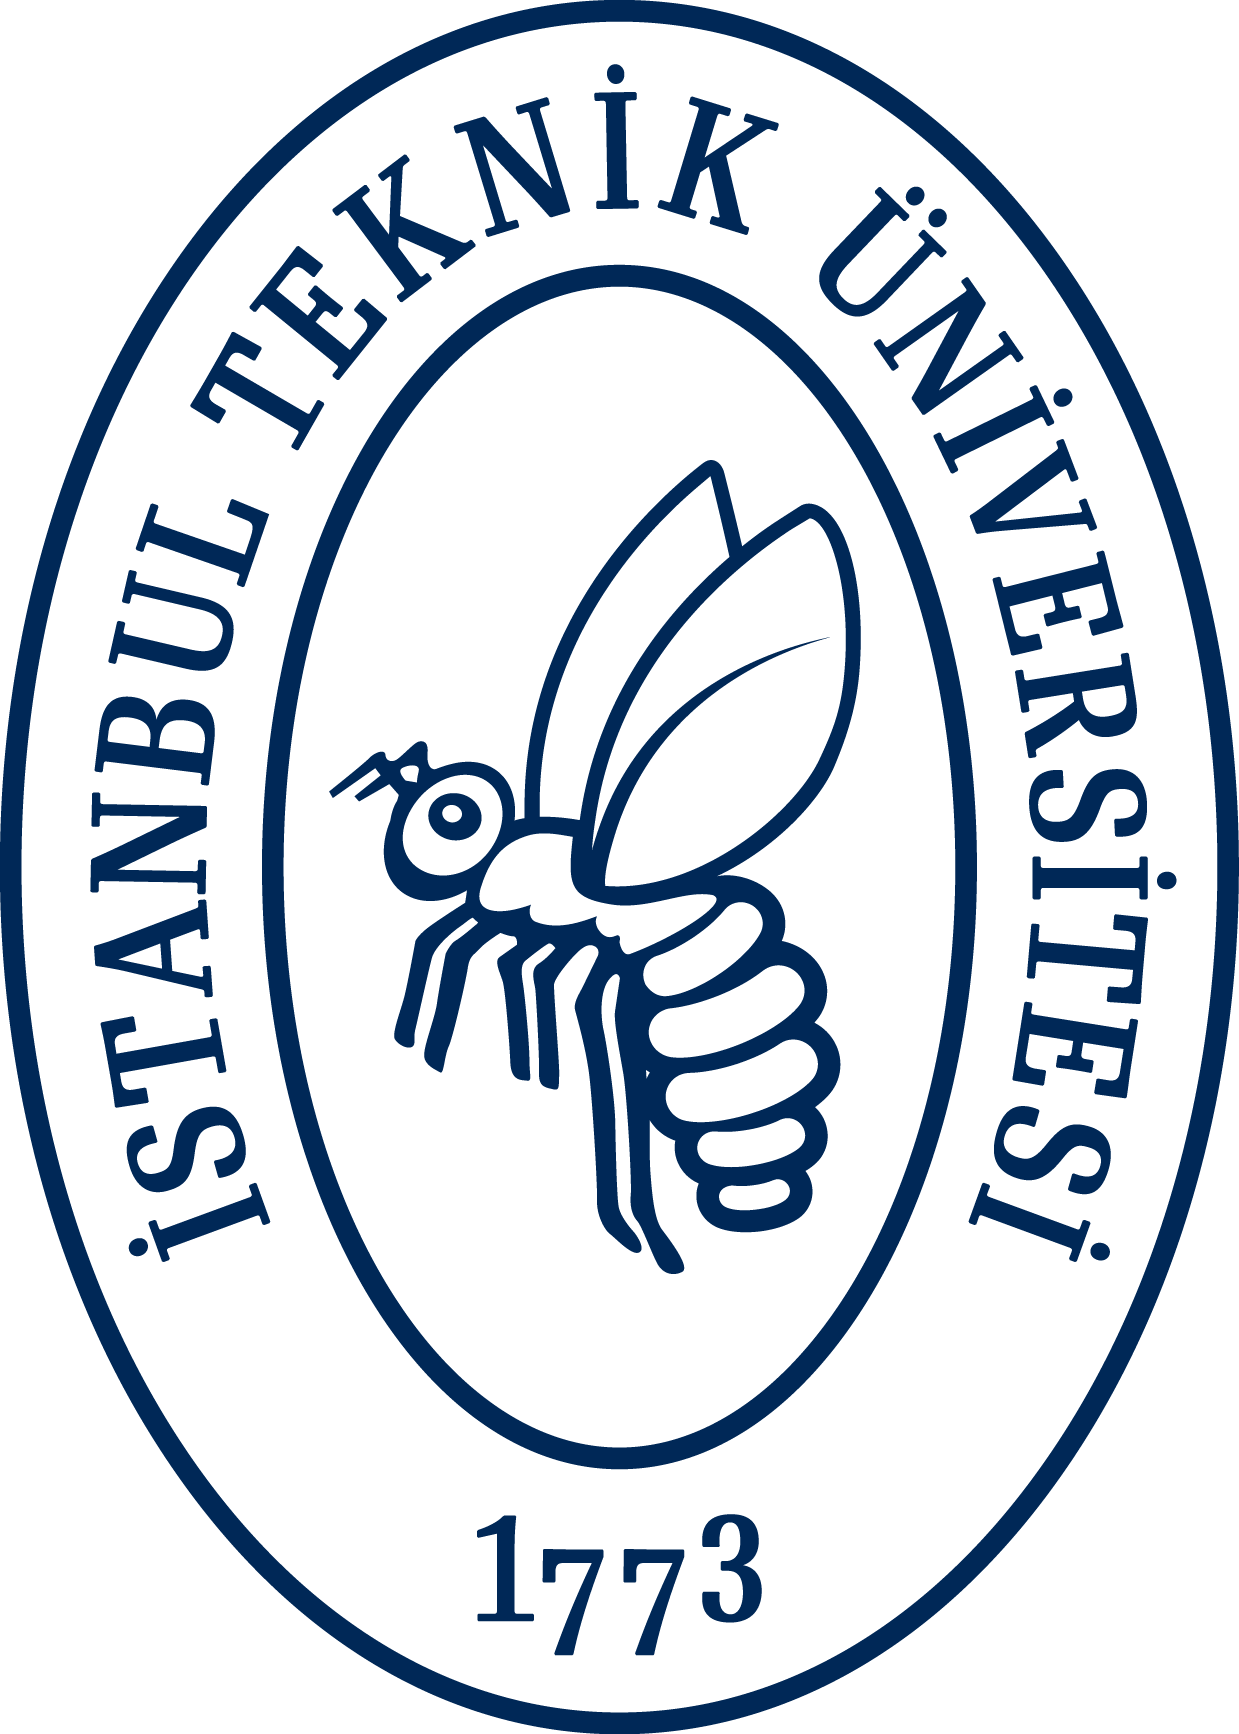 iTÜ – istanbul Teknik Üniversitesi Logo